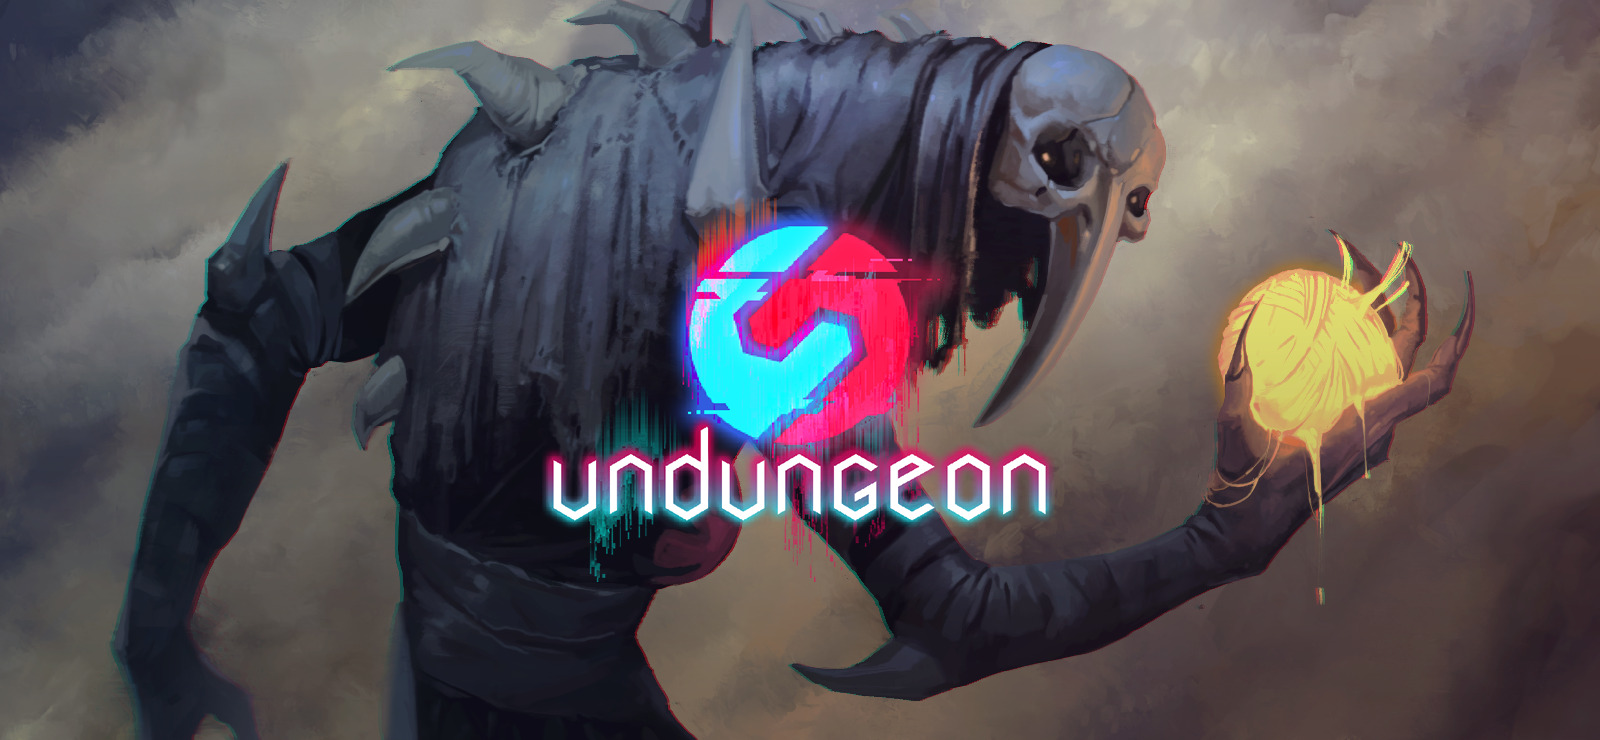 Undungeon-GOG